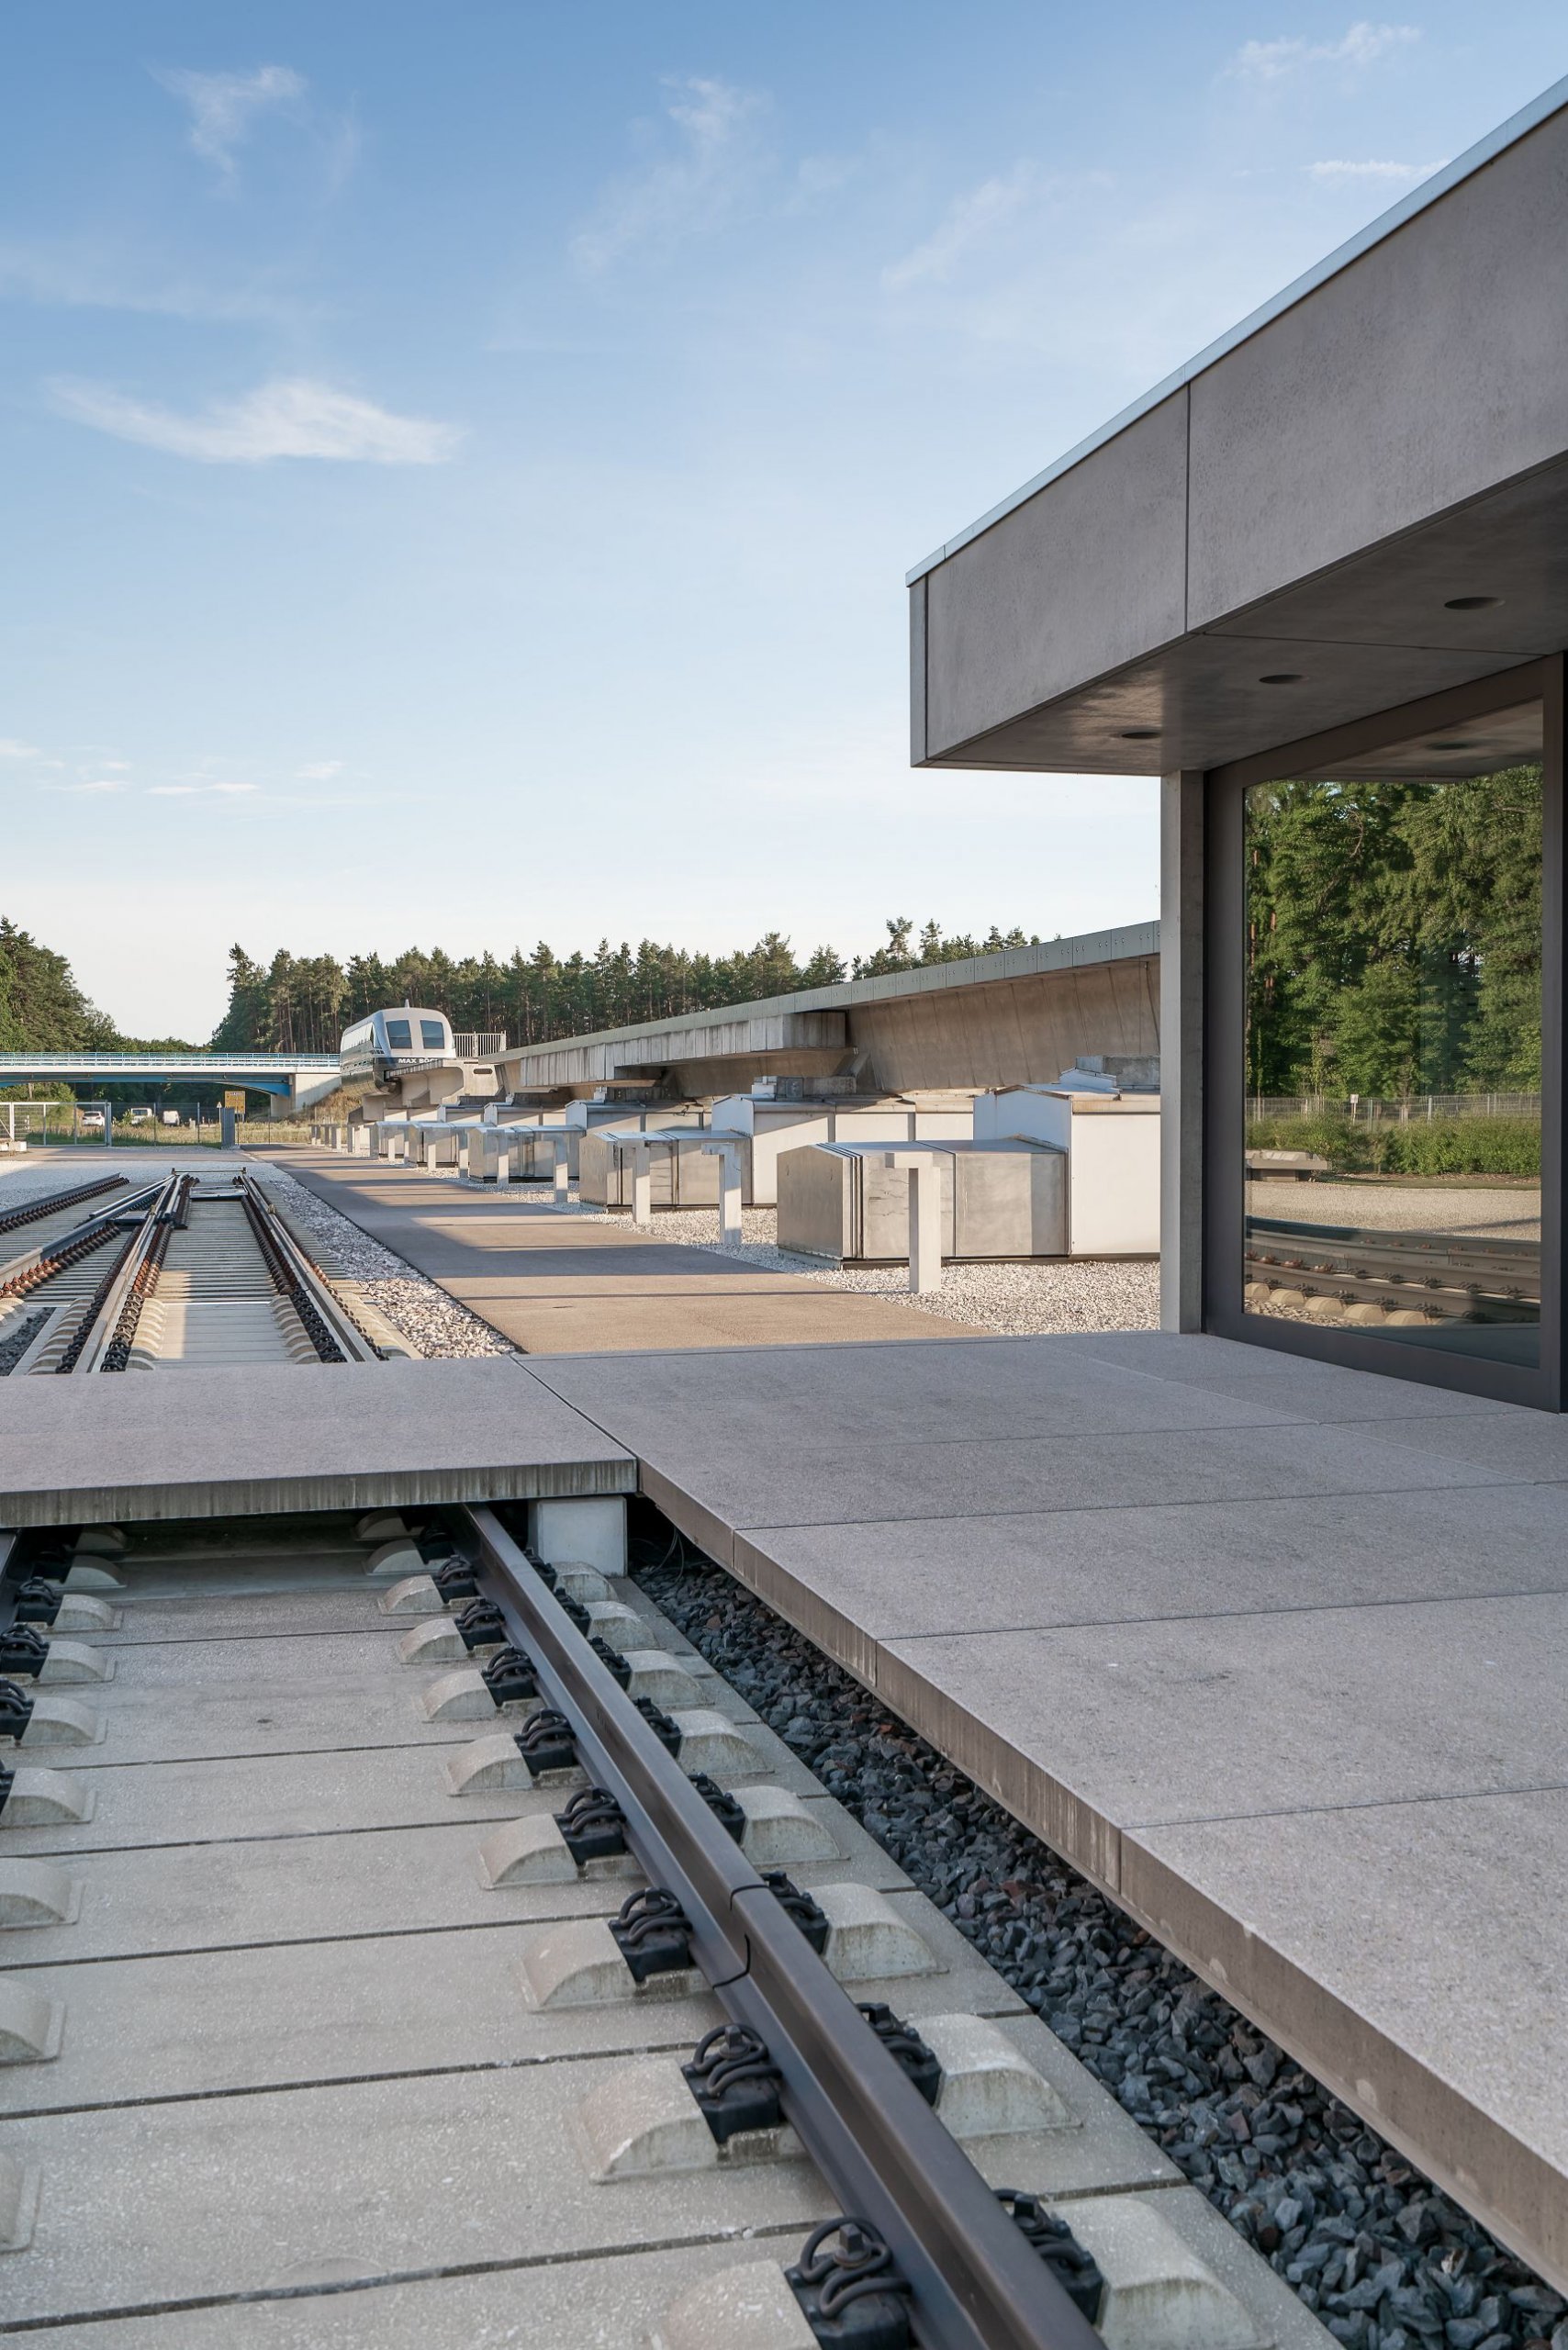 Bild: Ausgestellte Schienen am neuen Schulungsgebäude, Foto: ver.de landschaftsarchitektur